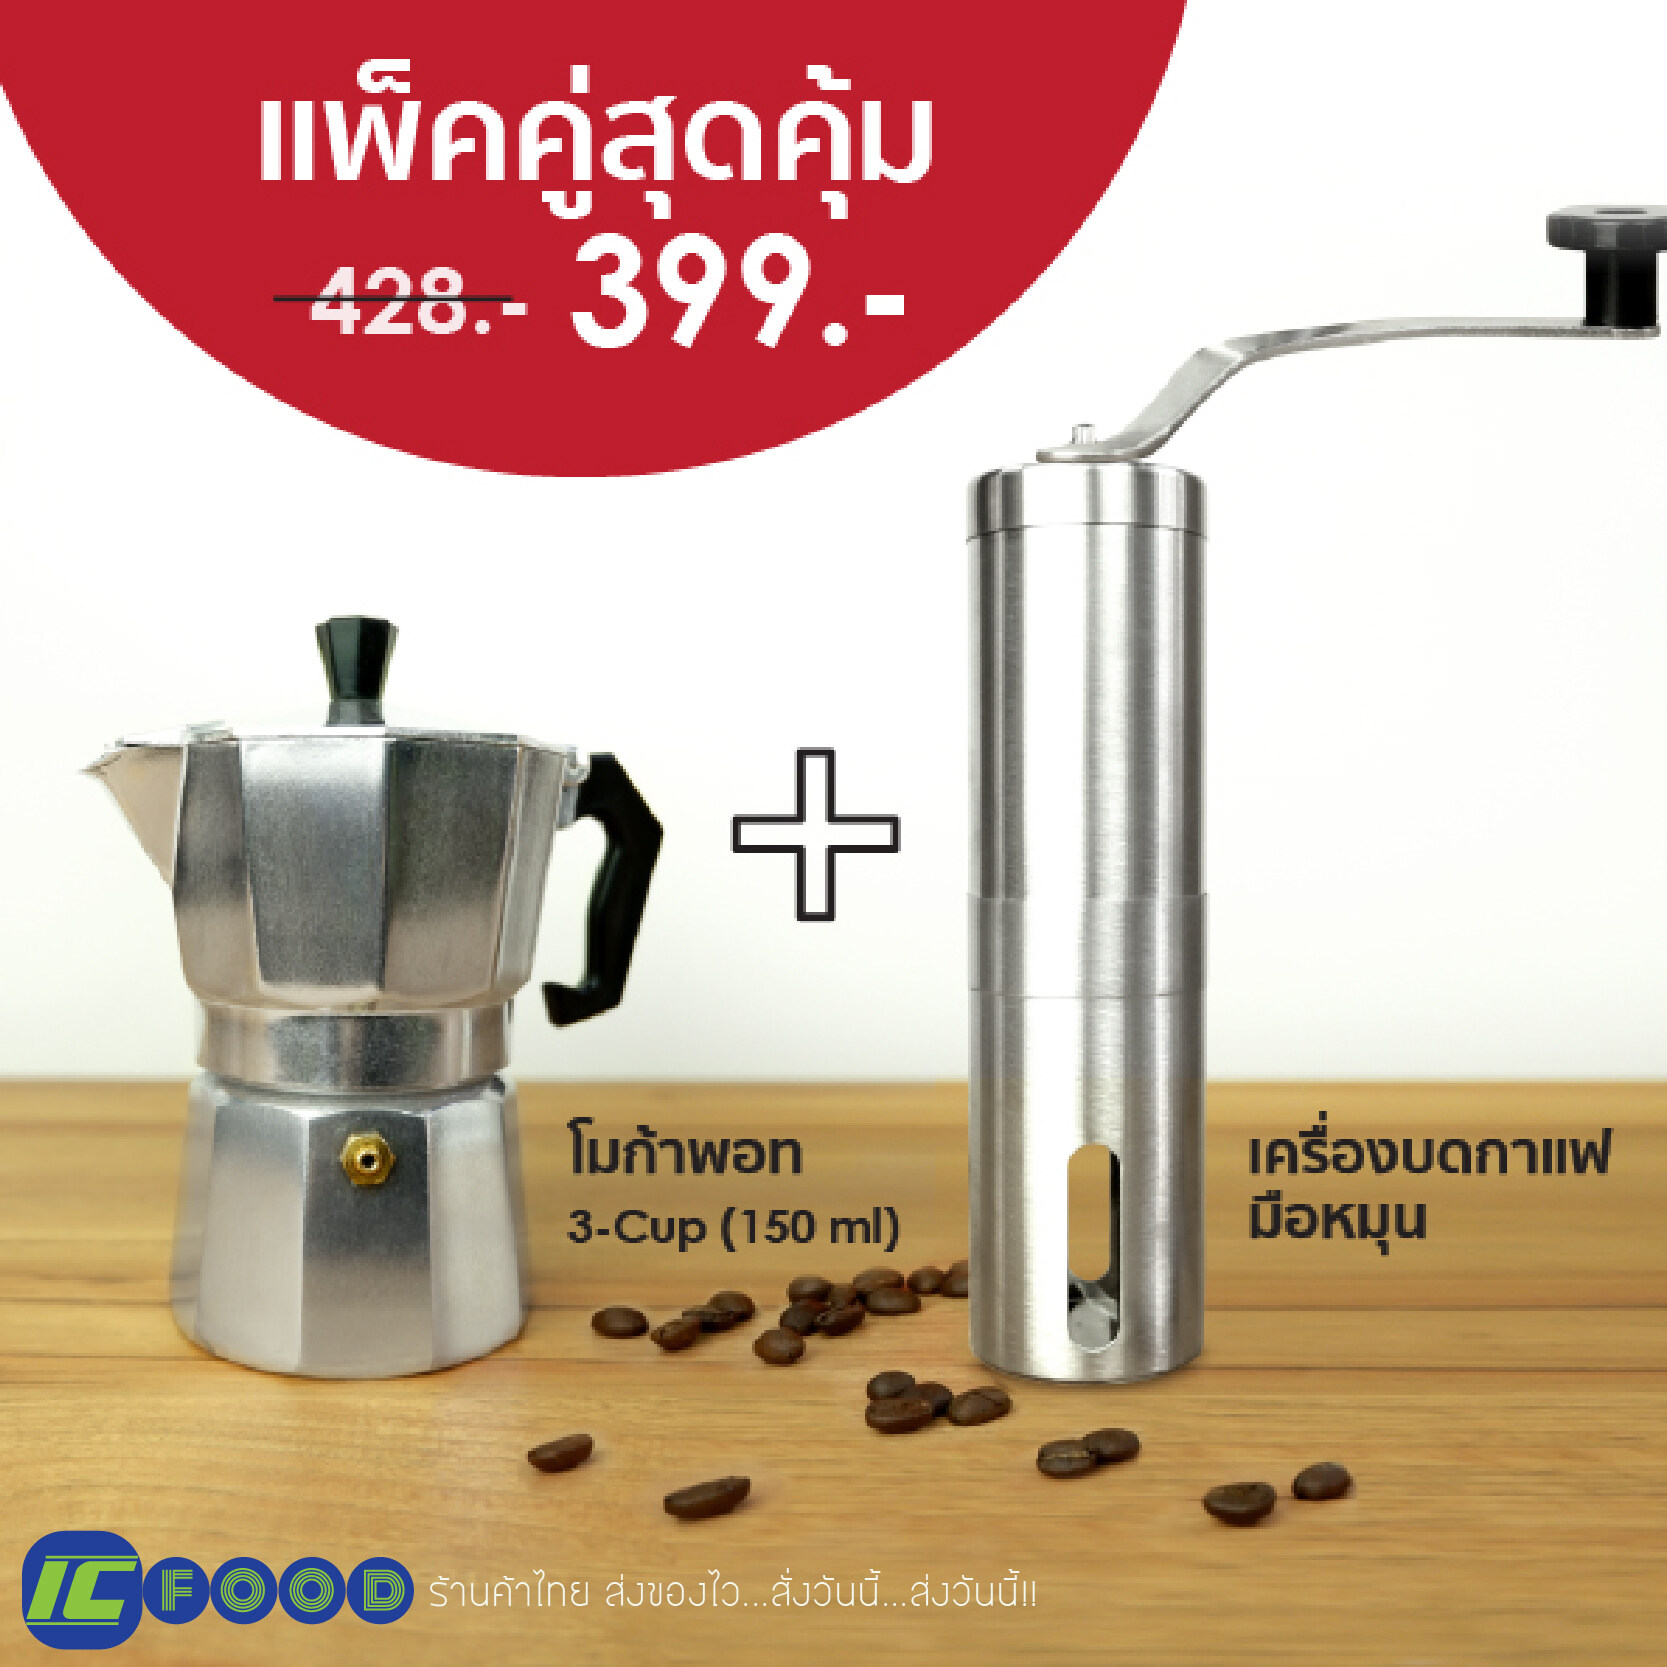 เซ็ท Moka pot 150ml. +  เครื่องบดกาแฟ หม้อต้มกาแฟ หม้อกาแฟสด เครื่องชงกาแฟ กาต้มกาแฟ เครื่องทำกาแฟ เมล็ด กาแฟ มือ ที่บดกาแฟ Stainless steel hand coffee grinder